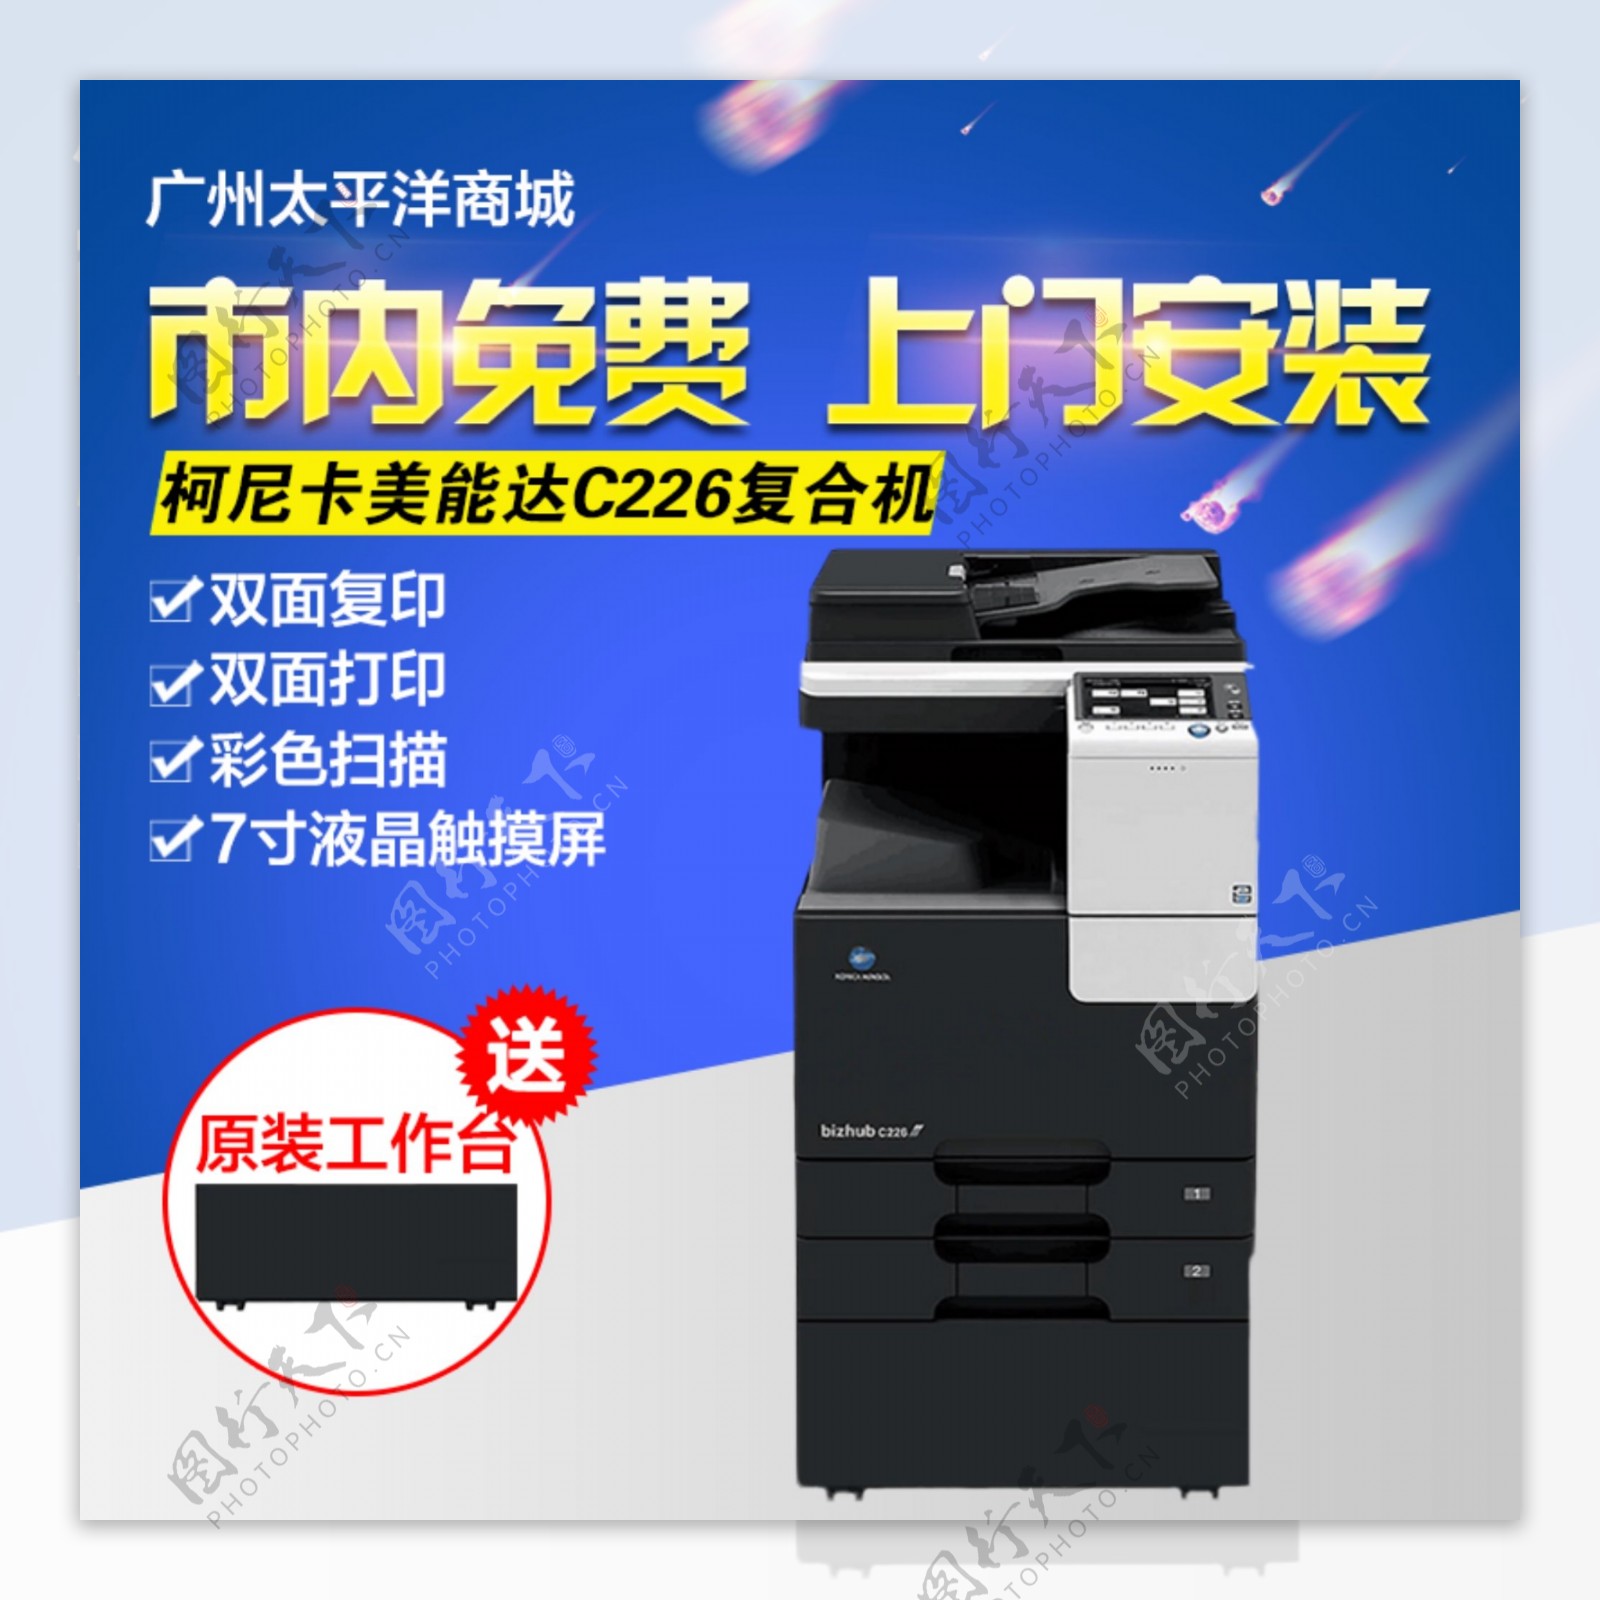 复印机主图打印机主图数码电器主图电器主图